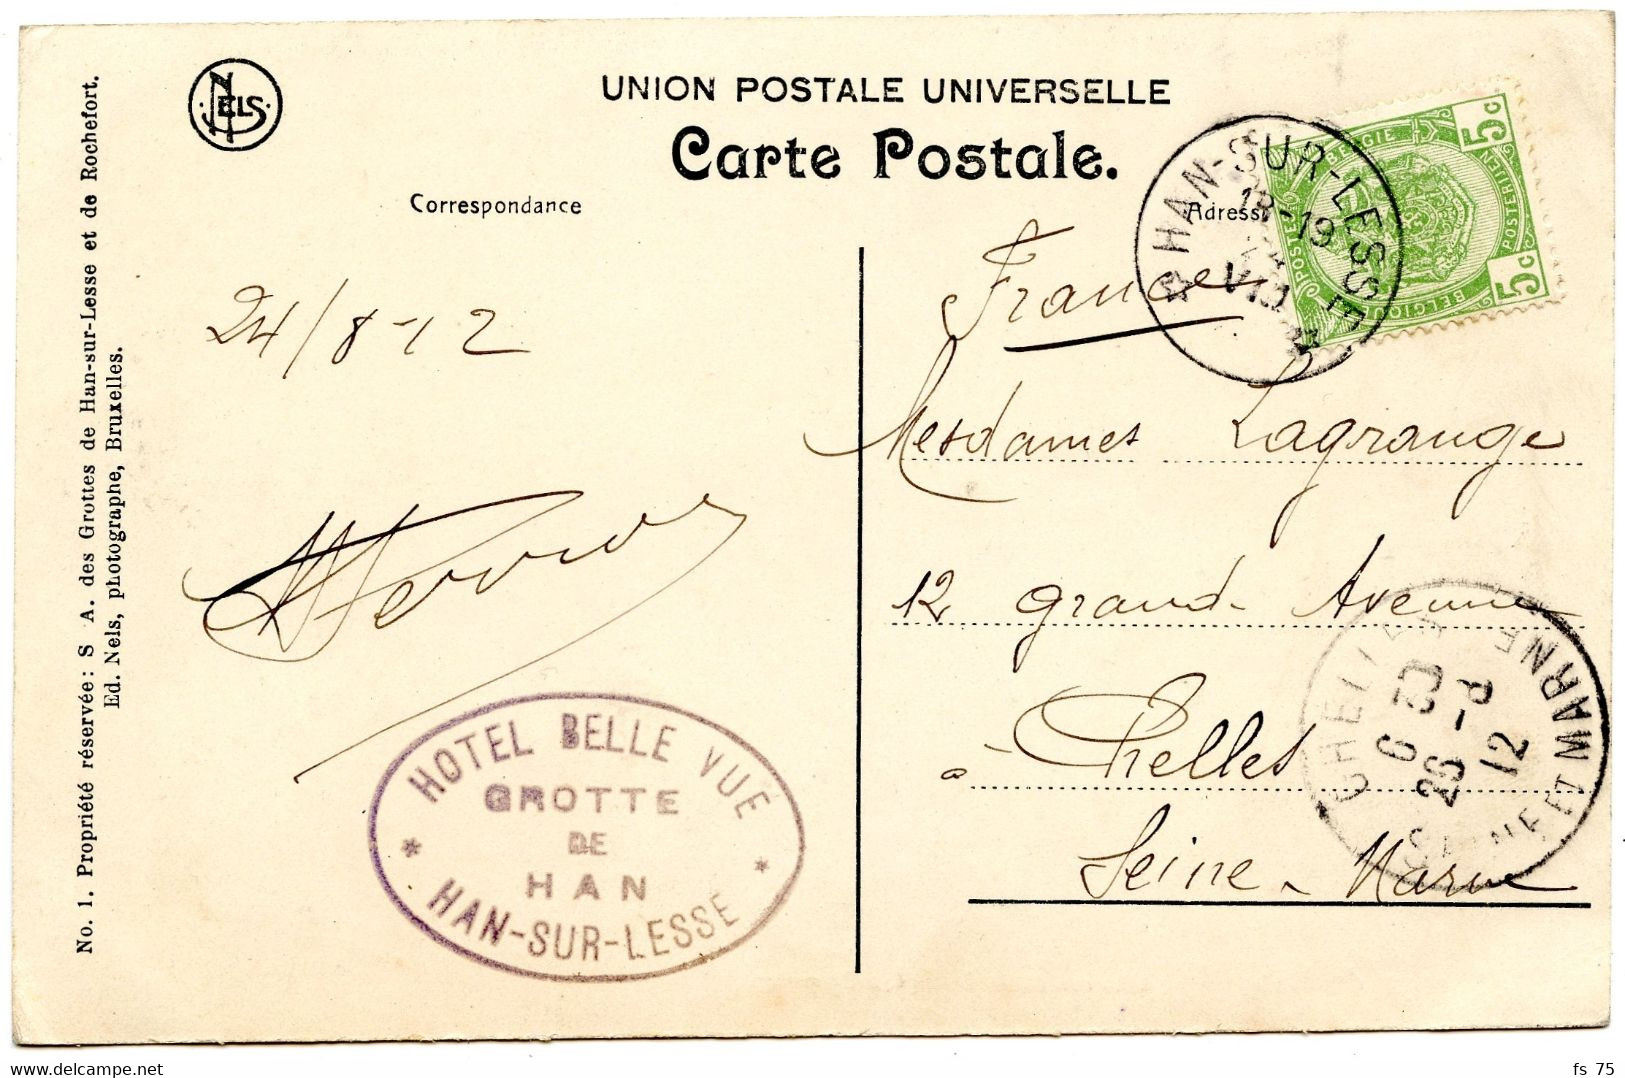 BELGIQUE - COB 83 SIMPLE CERCLE RELAIS A ETOILES HAN-SUR-LESSE SUR CARTE POSTALE, 1912 - Postmarks With Stars